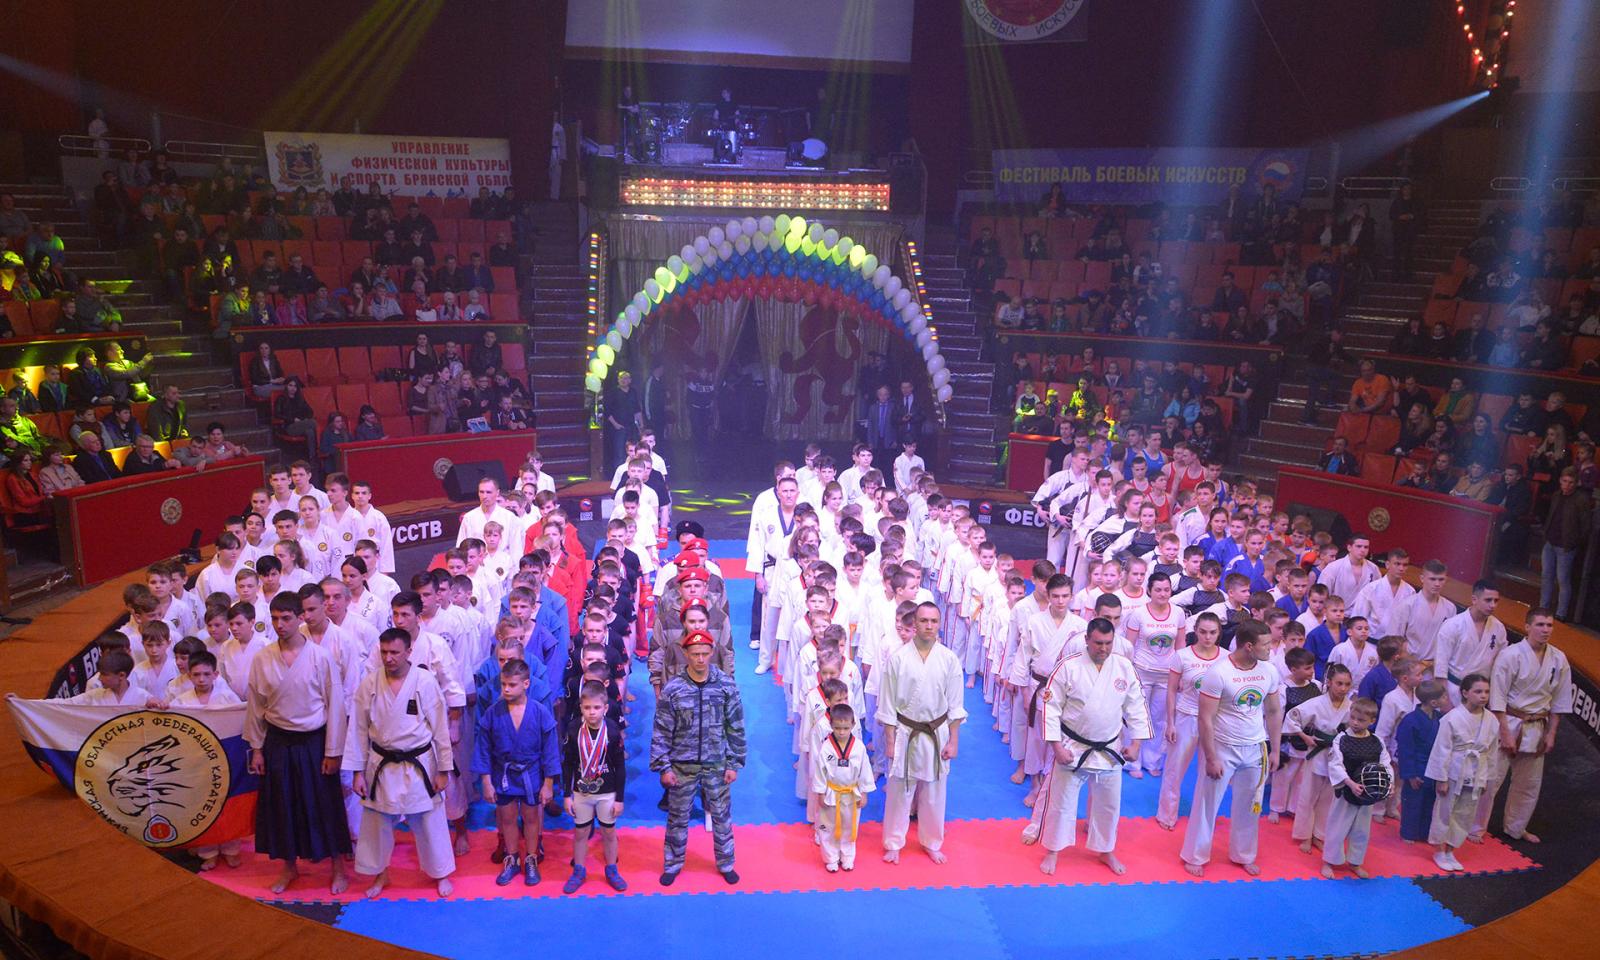 Фестиваль боевых искусств собрал в Брянске 300 спортсменов